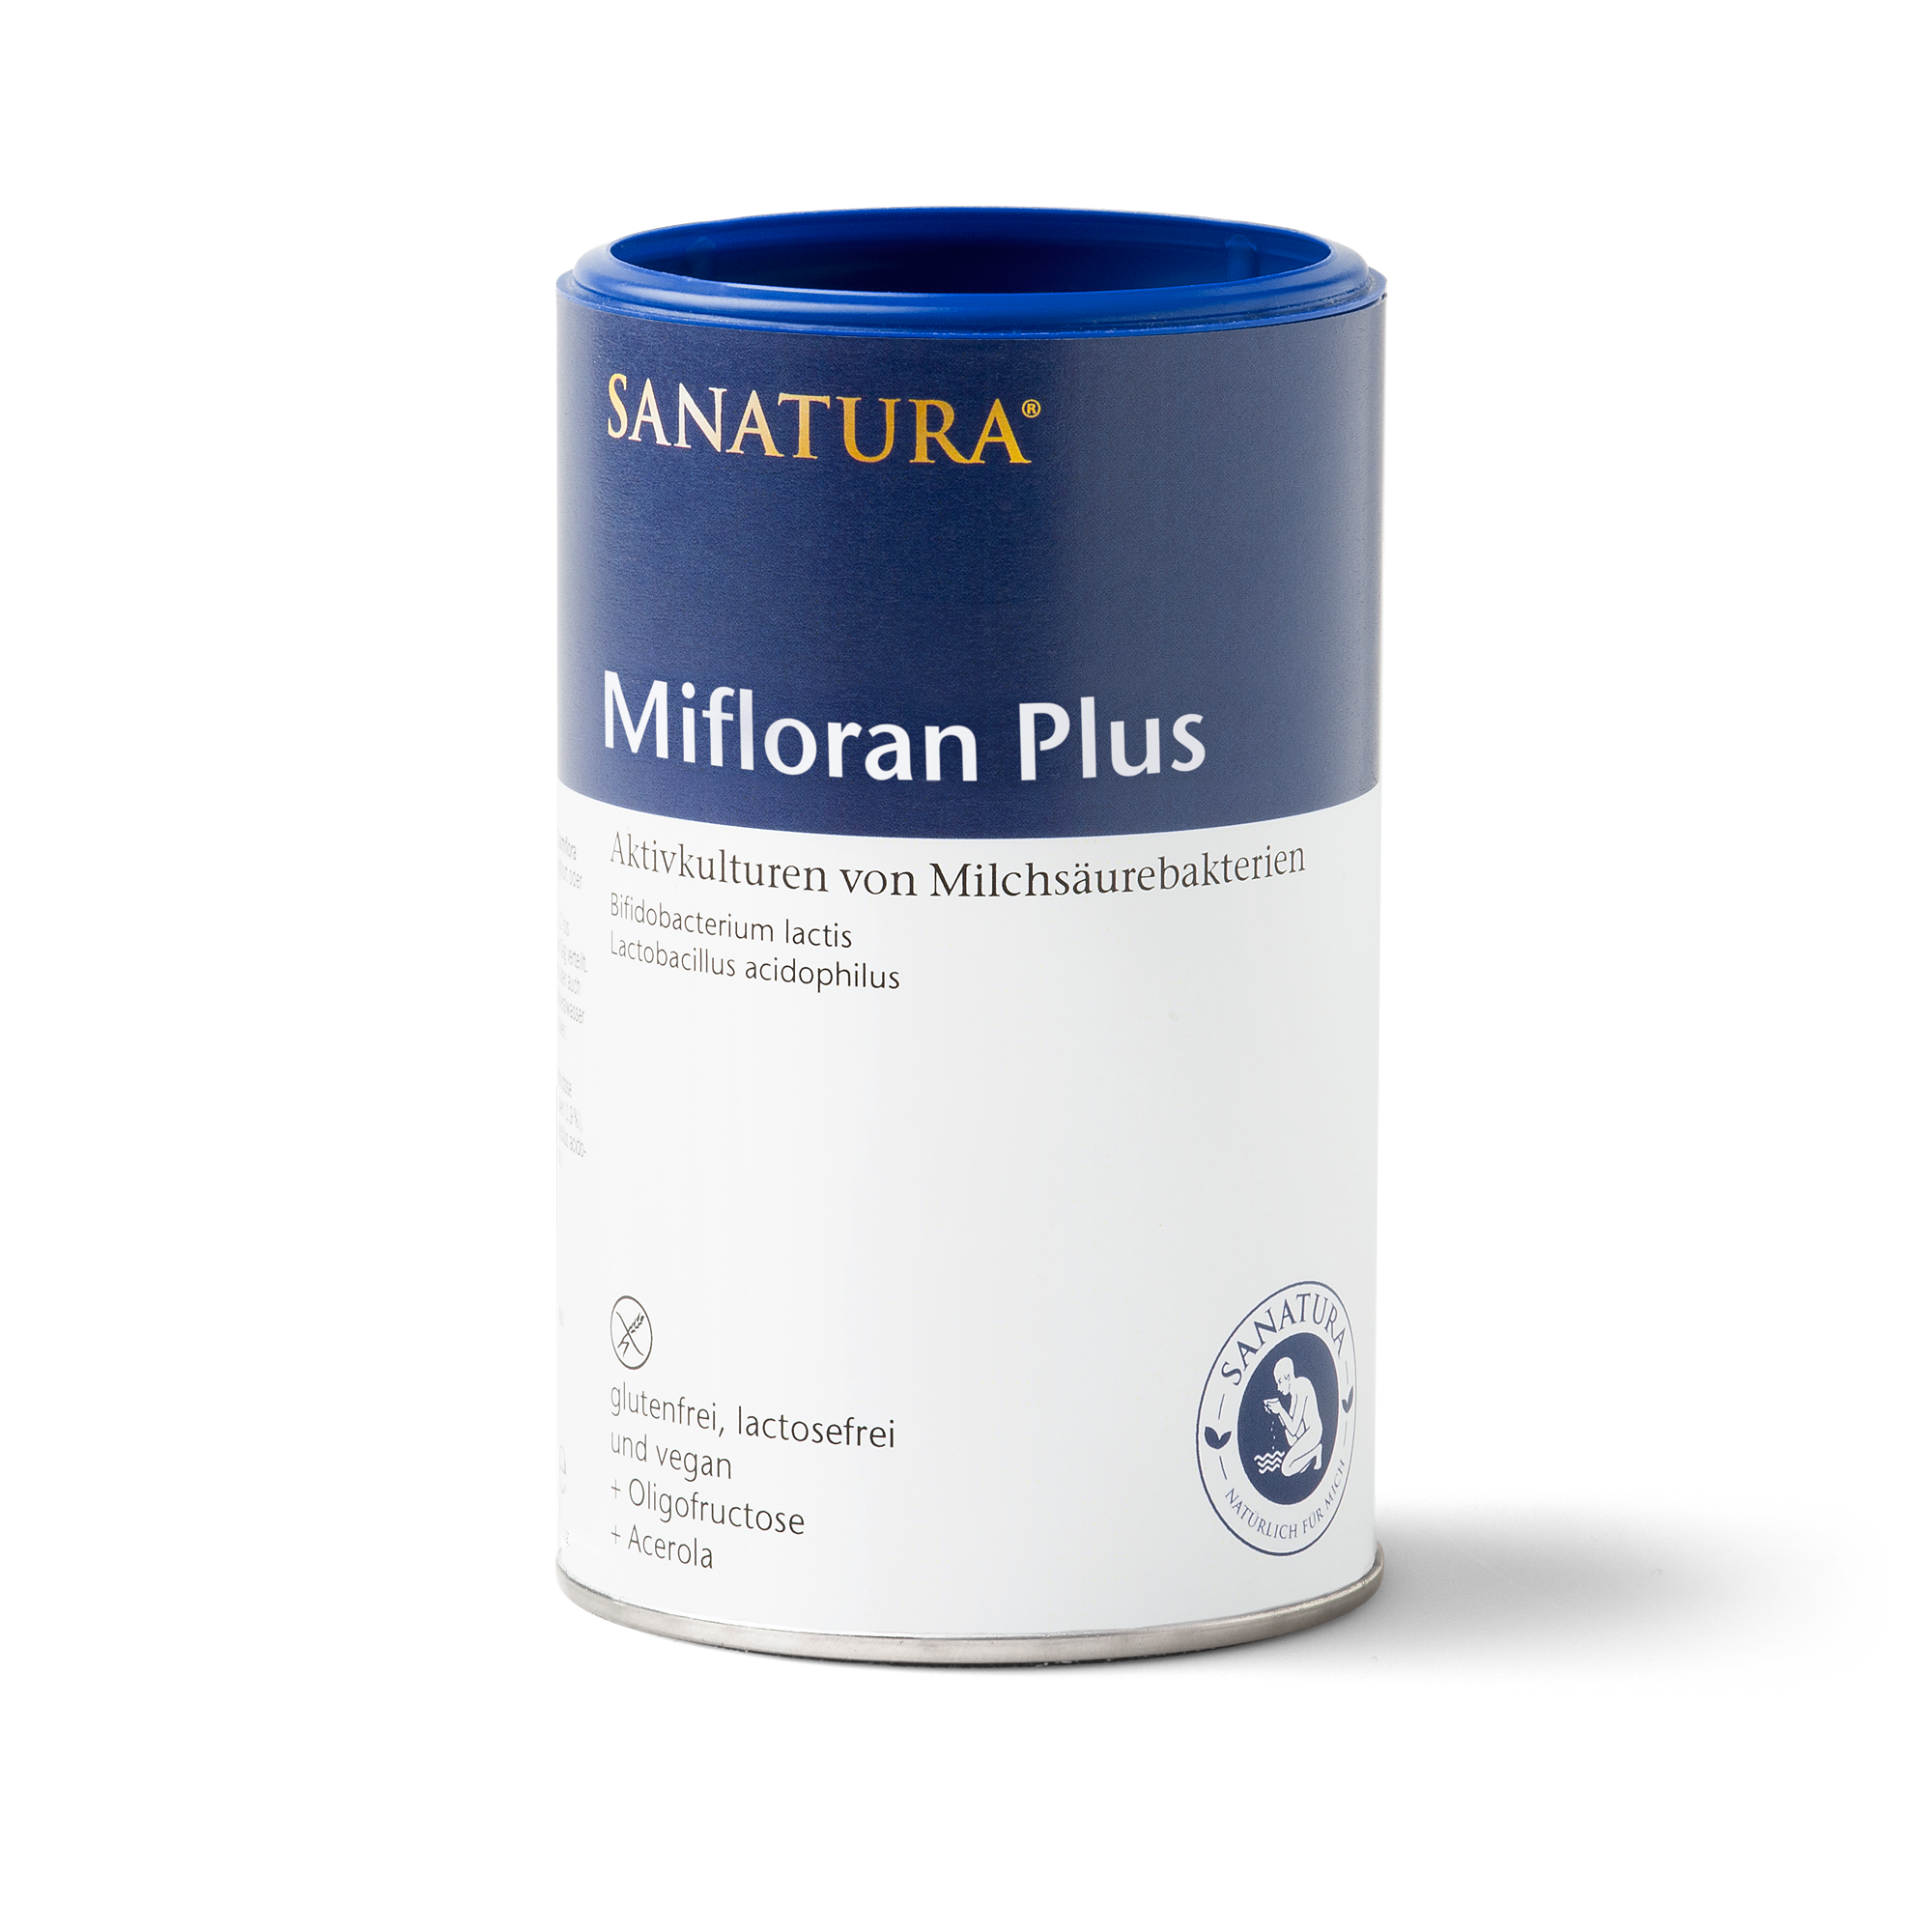 Sanatura Mifloran Plus | 200g | Unterstützt Darmgesundheit & Immunsystem mit Probiotika & Vitamin C | Für alle Altersgruppen